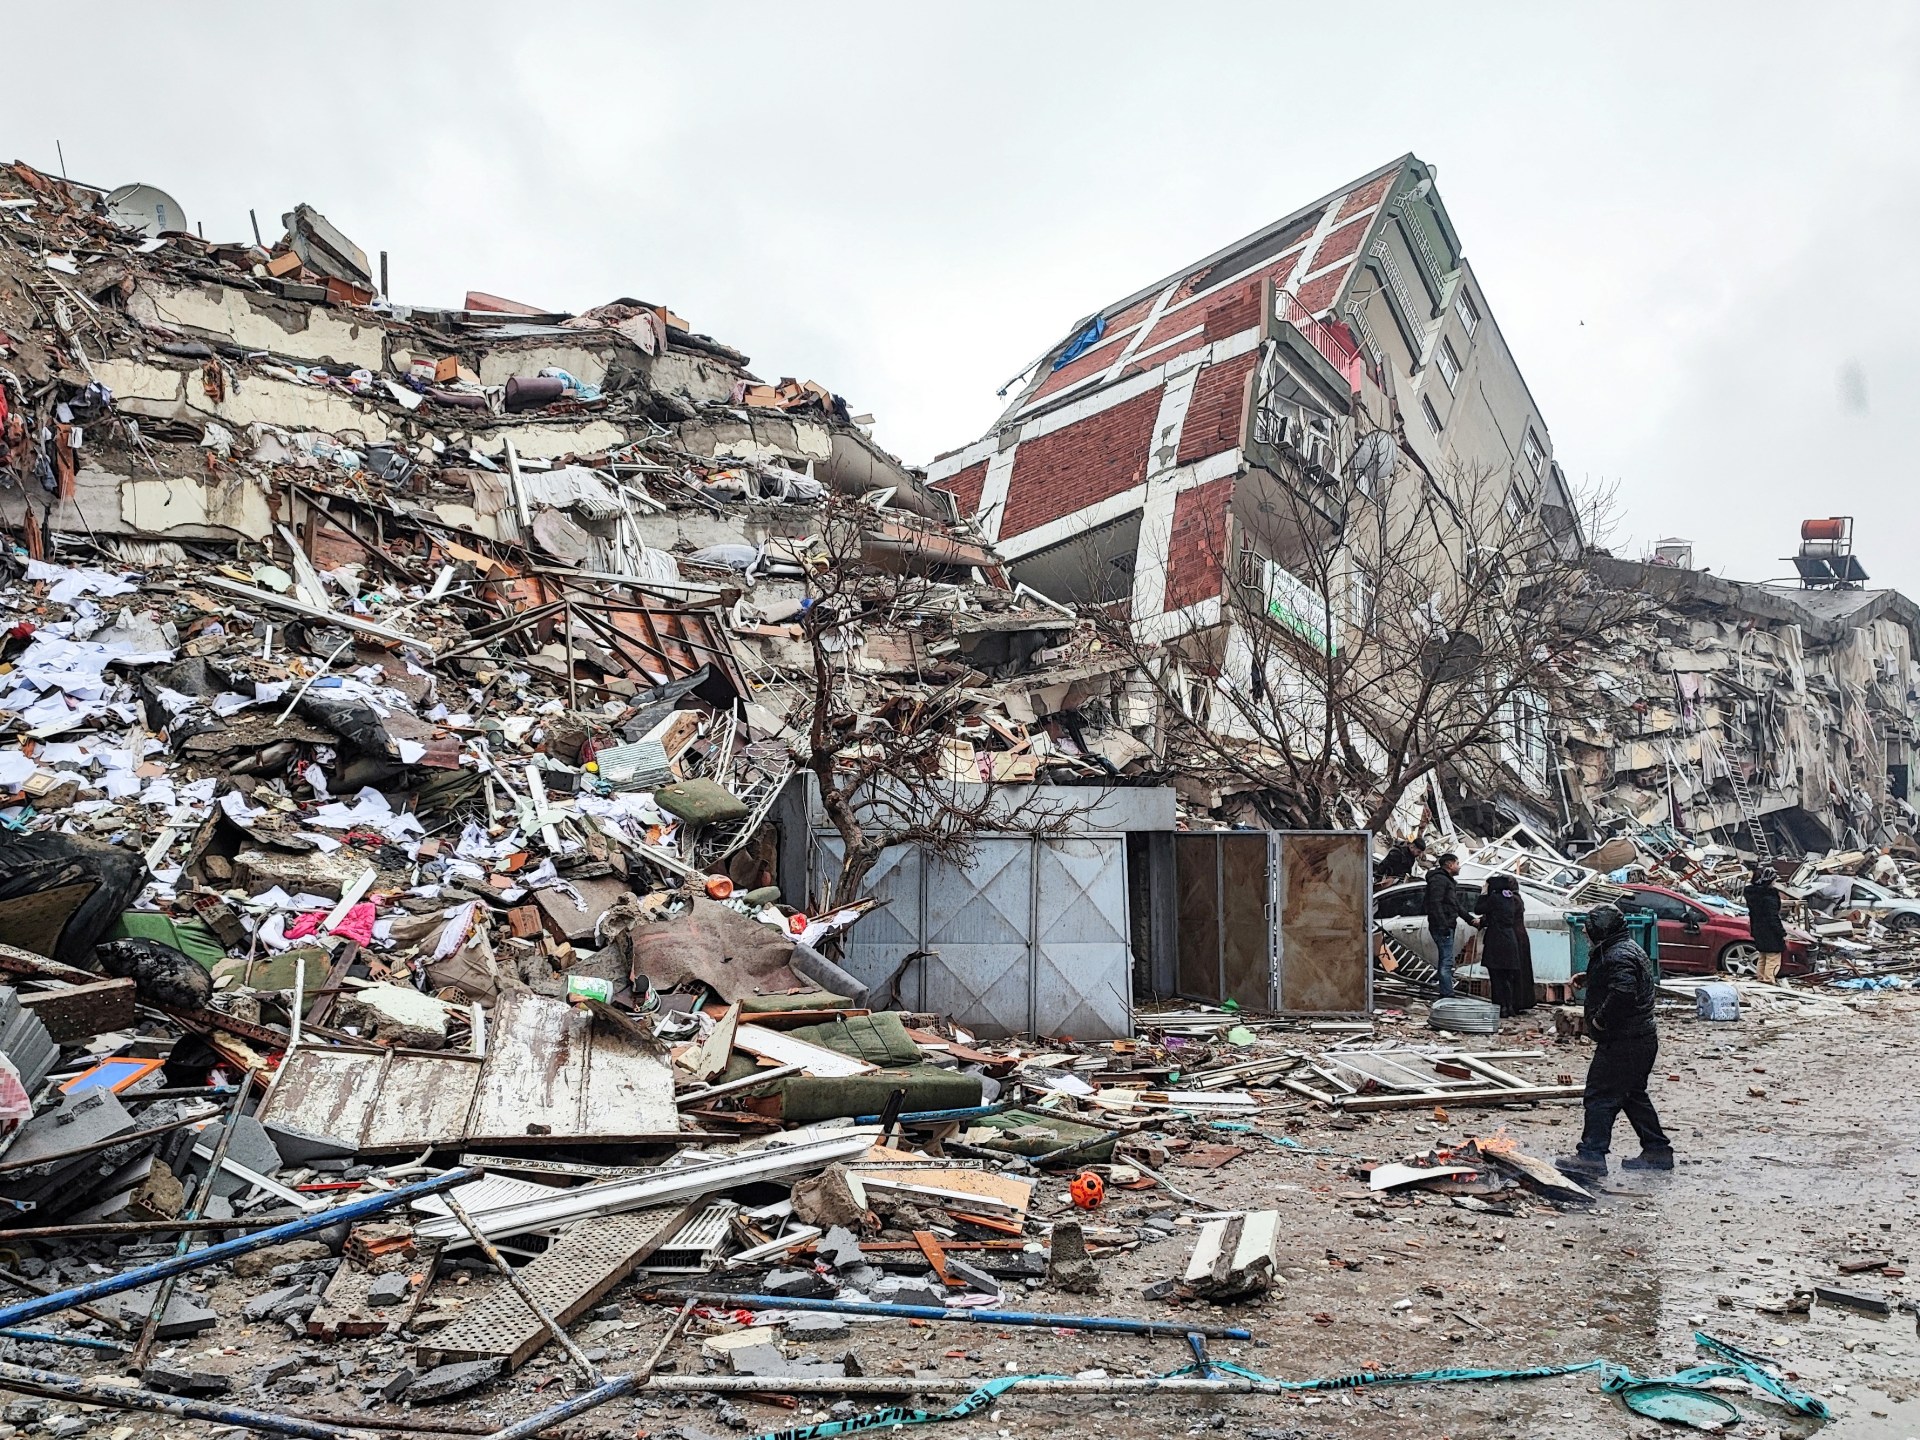 Des milliers de morts après de puissants tremblements de terre qui dévastent la Turquie et la Syrie |  Nouvelles sur les tremblements de terre